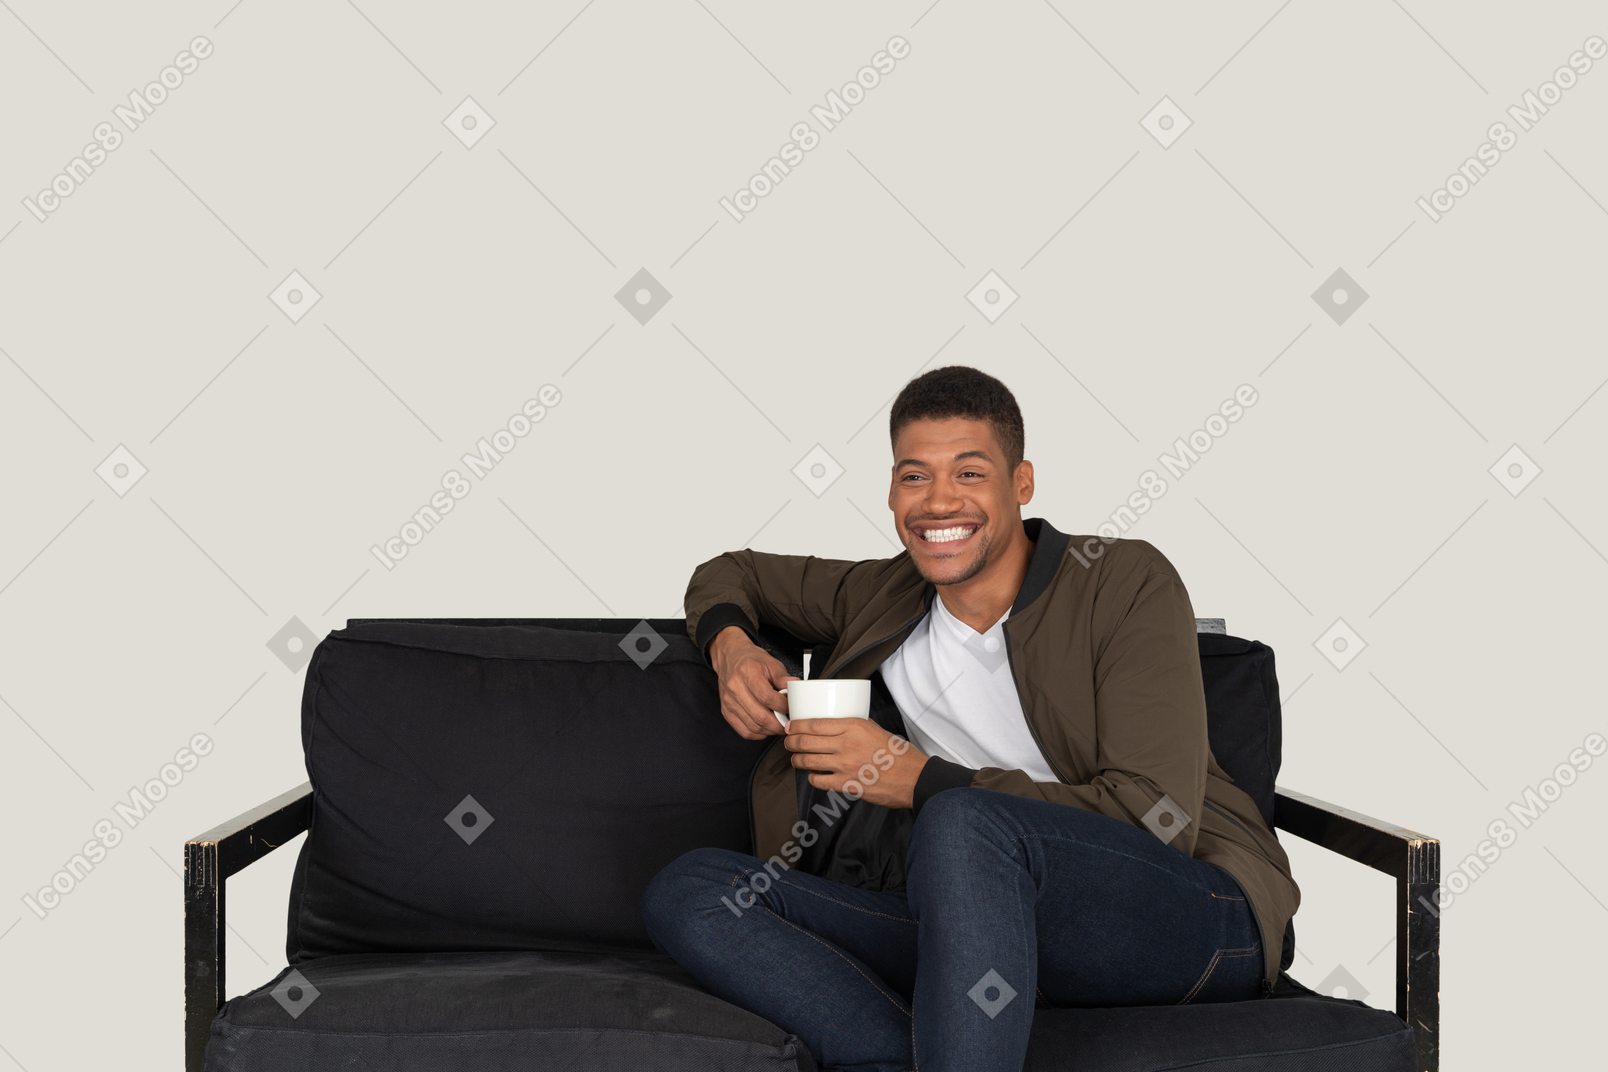 커피 한잔과 함께 소파에 앉아 웃는 젊은 남자의 전면보기